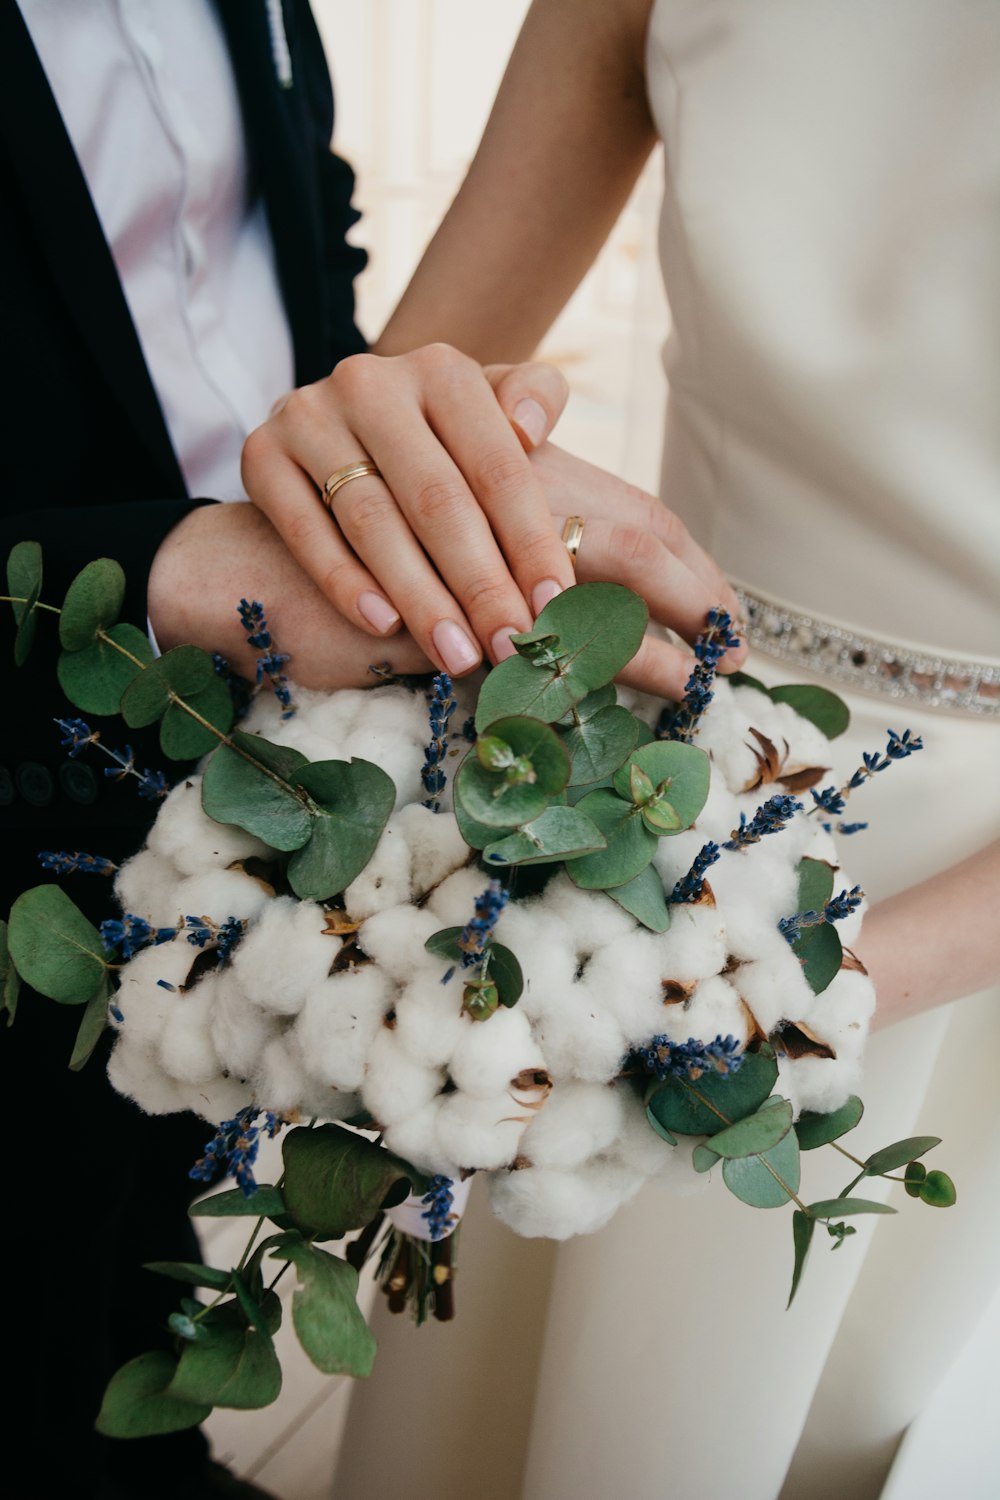 Dos personas tomadas de la mano en la flor blanca